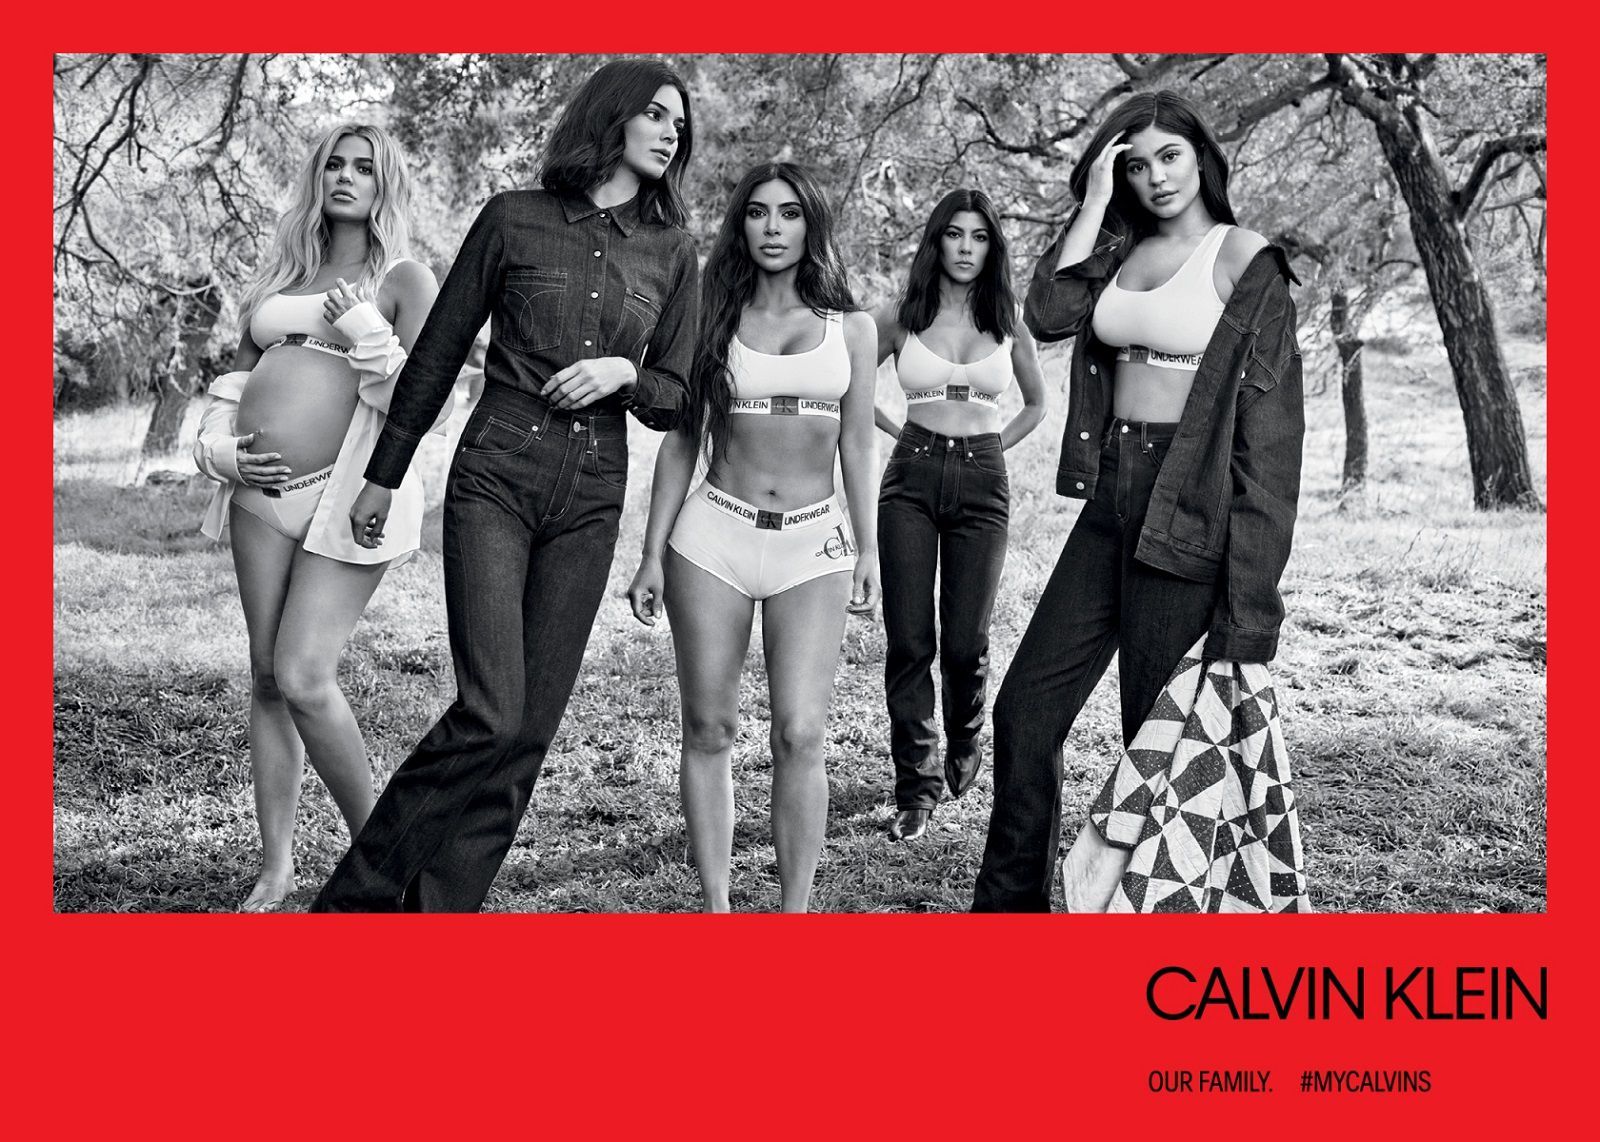 Women's World Cup stars pose in underwear for Calvin Klein